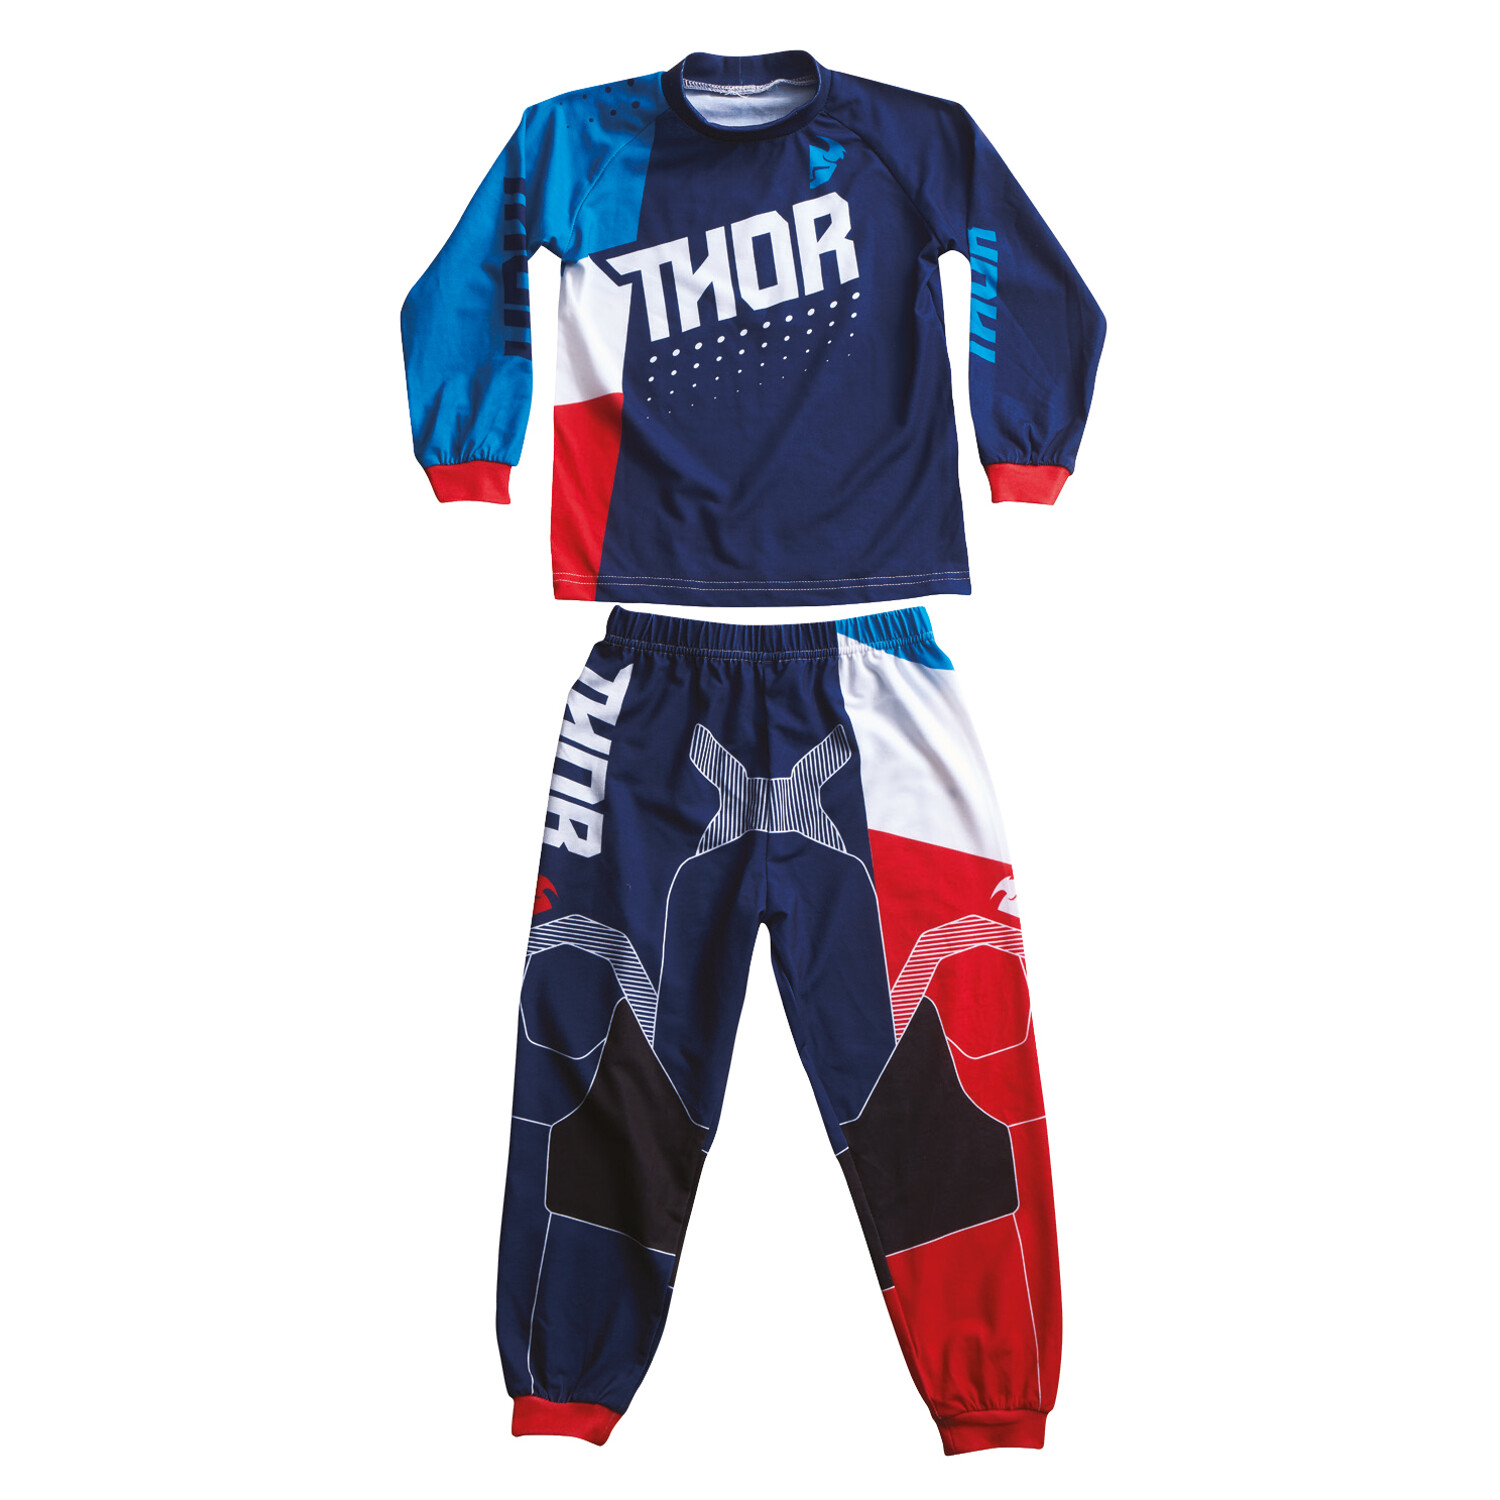 Thor Kids Pyjama Pajamas Blau/Rot